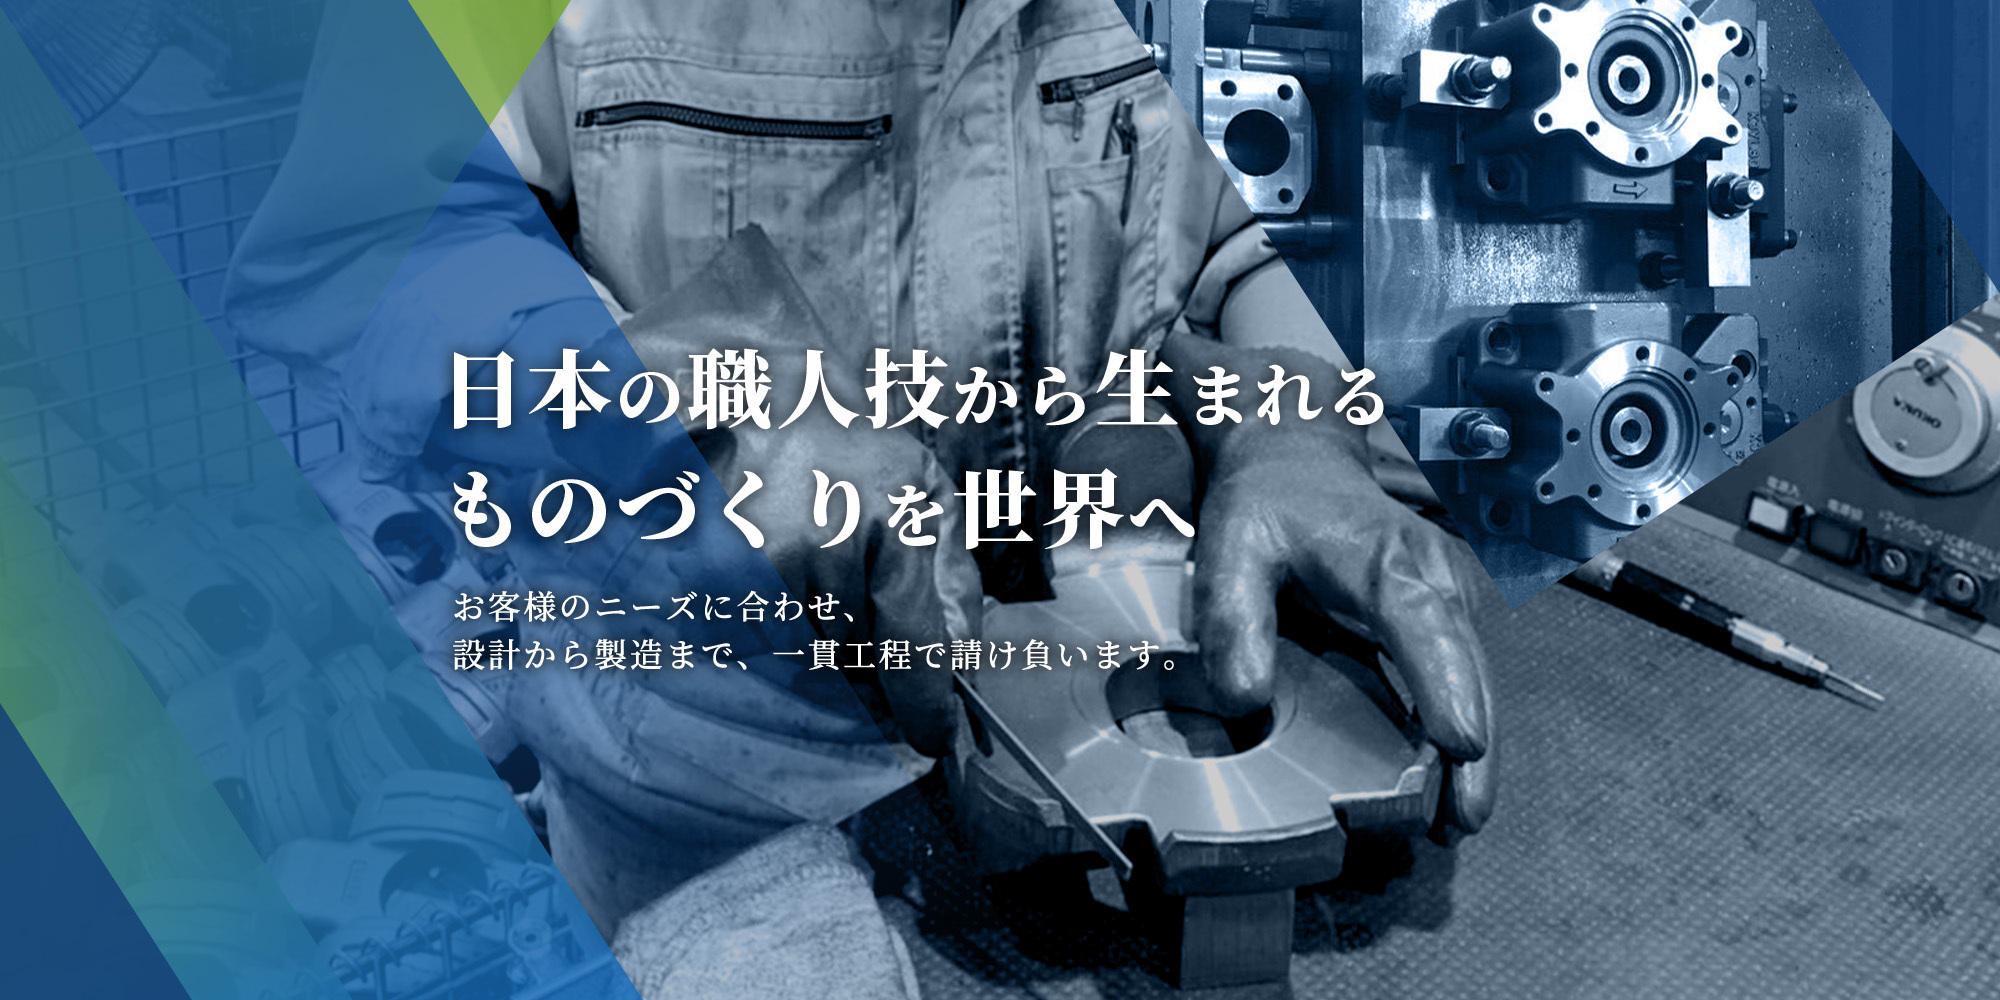 日本の職人技から生まれるものづくりを世界へ